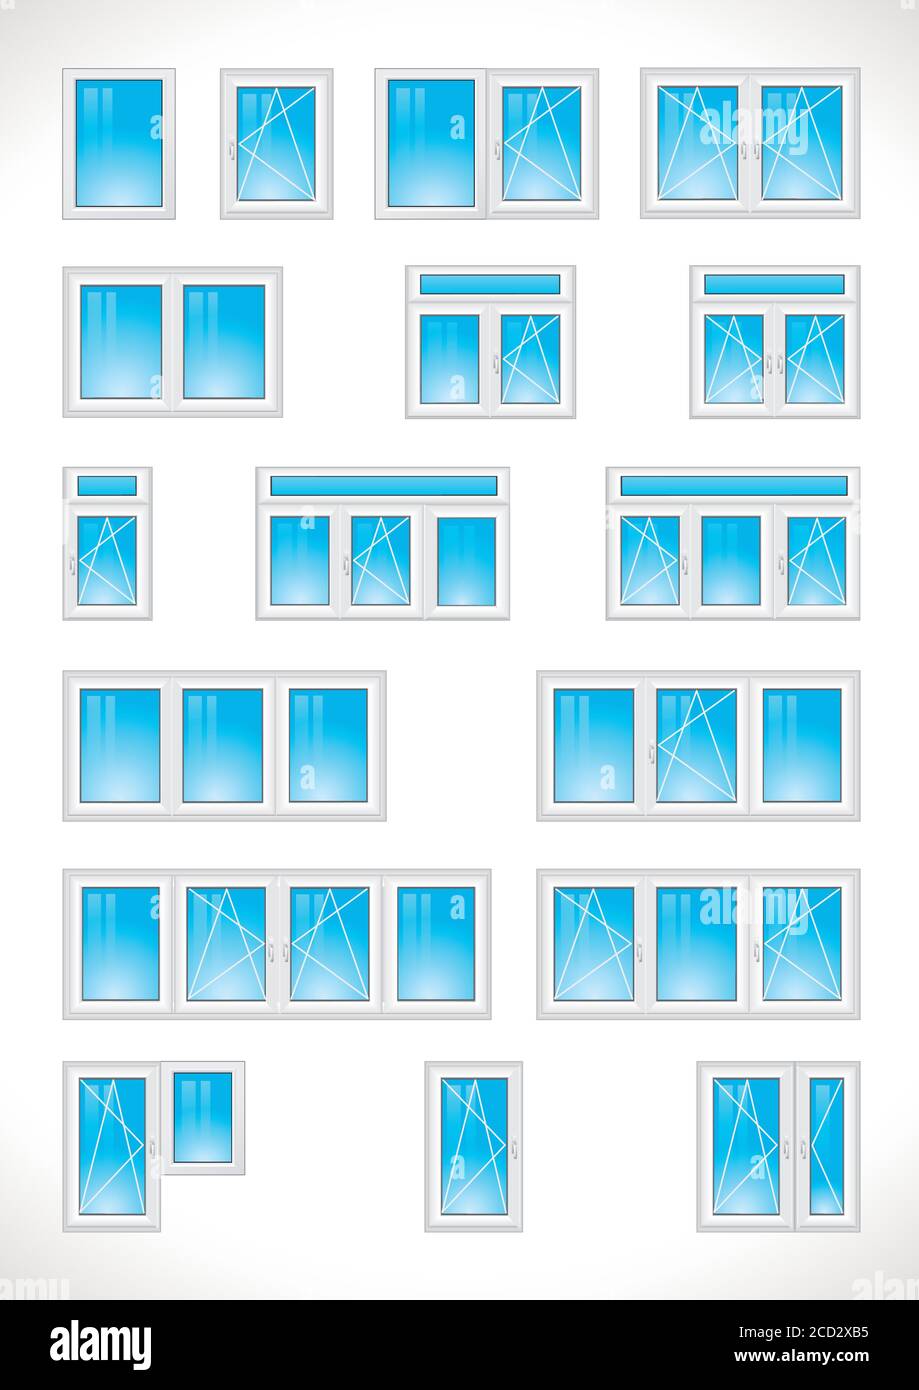 Liste des logos de fenêtres et de portes vitrées. Ensemble d'icônes vectorielles de fenêtres en plastique pour l'industrie du bâtiment, l'installation, les symboles avec systèmes ouverts et fermé Illustration de Vecteur